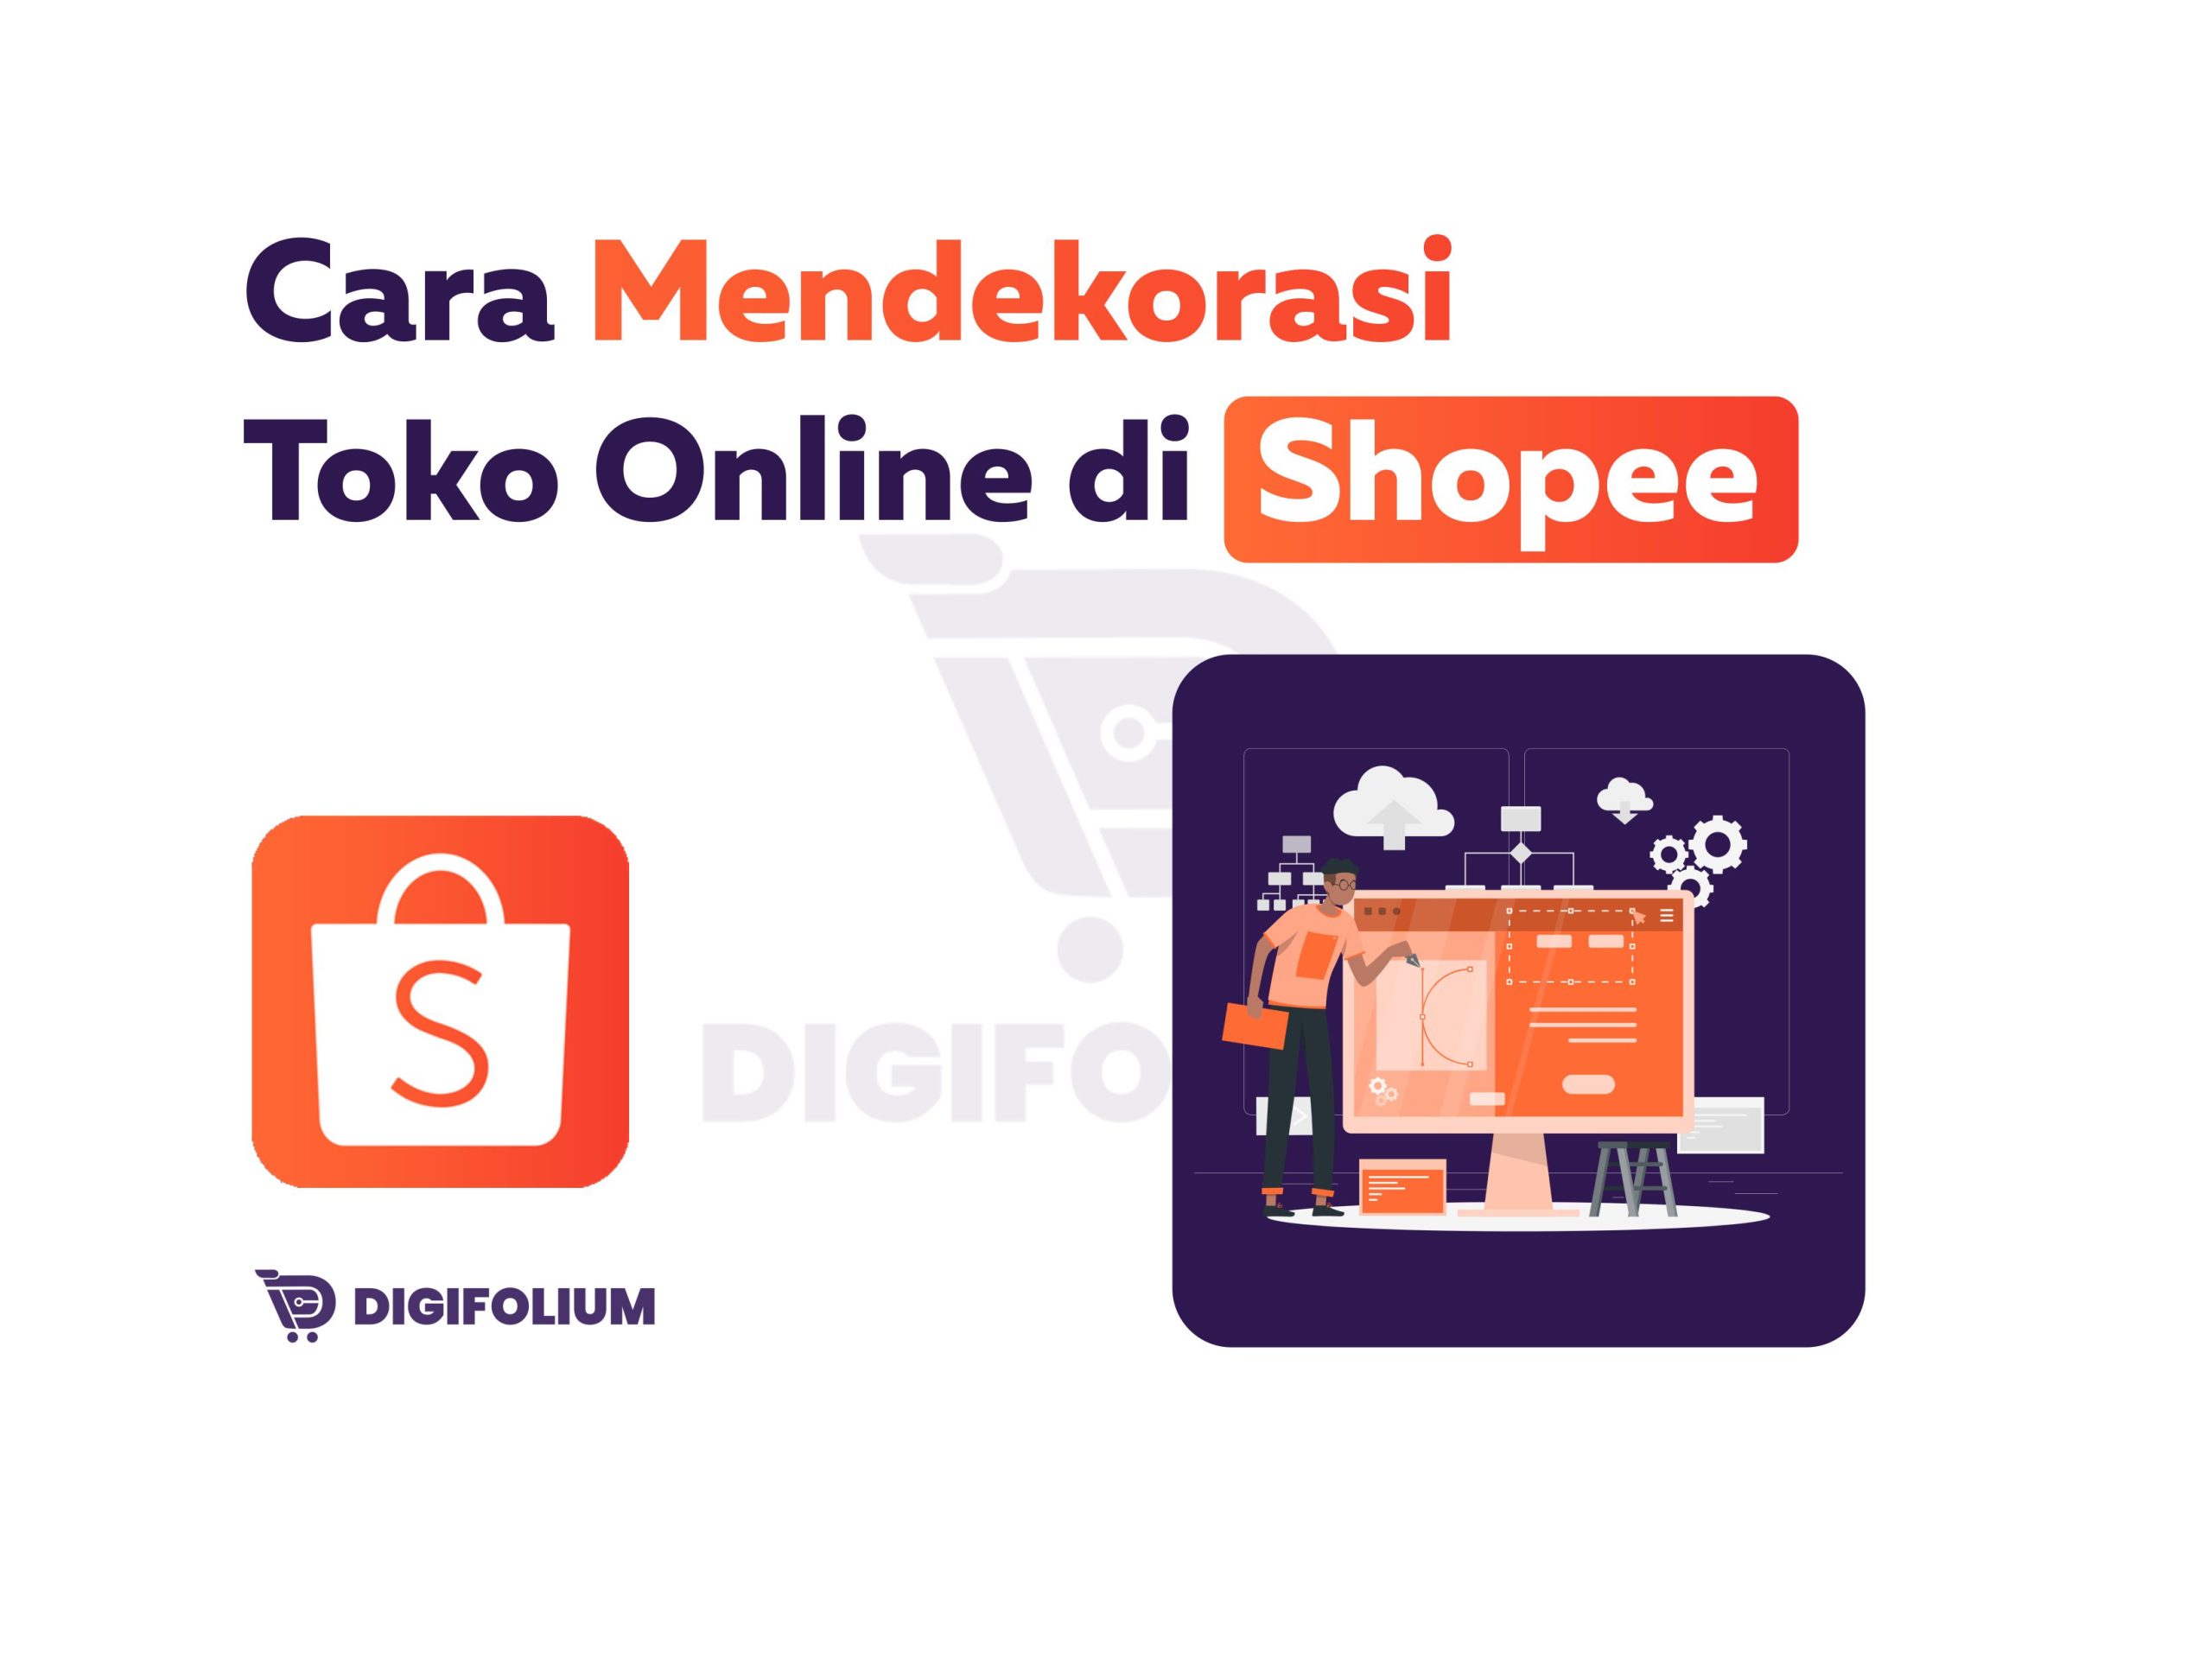 Cara Mendekorasi Toko Online di Shopee